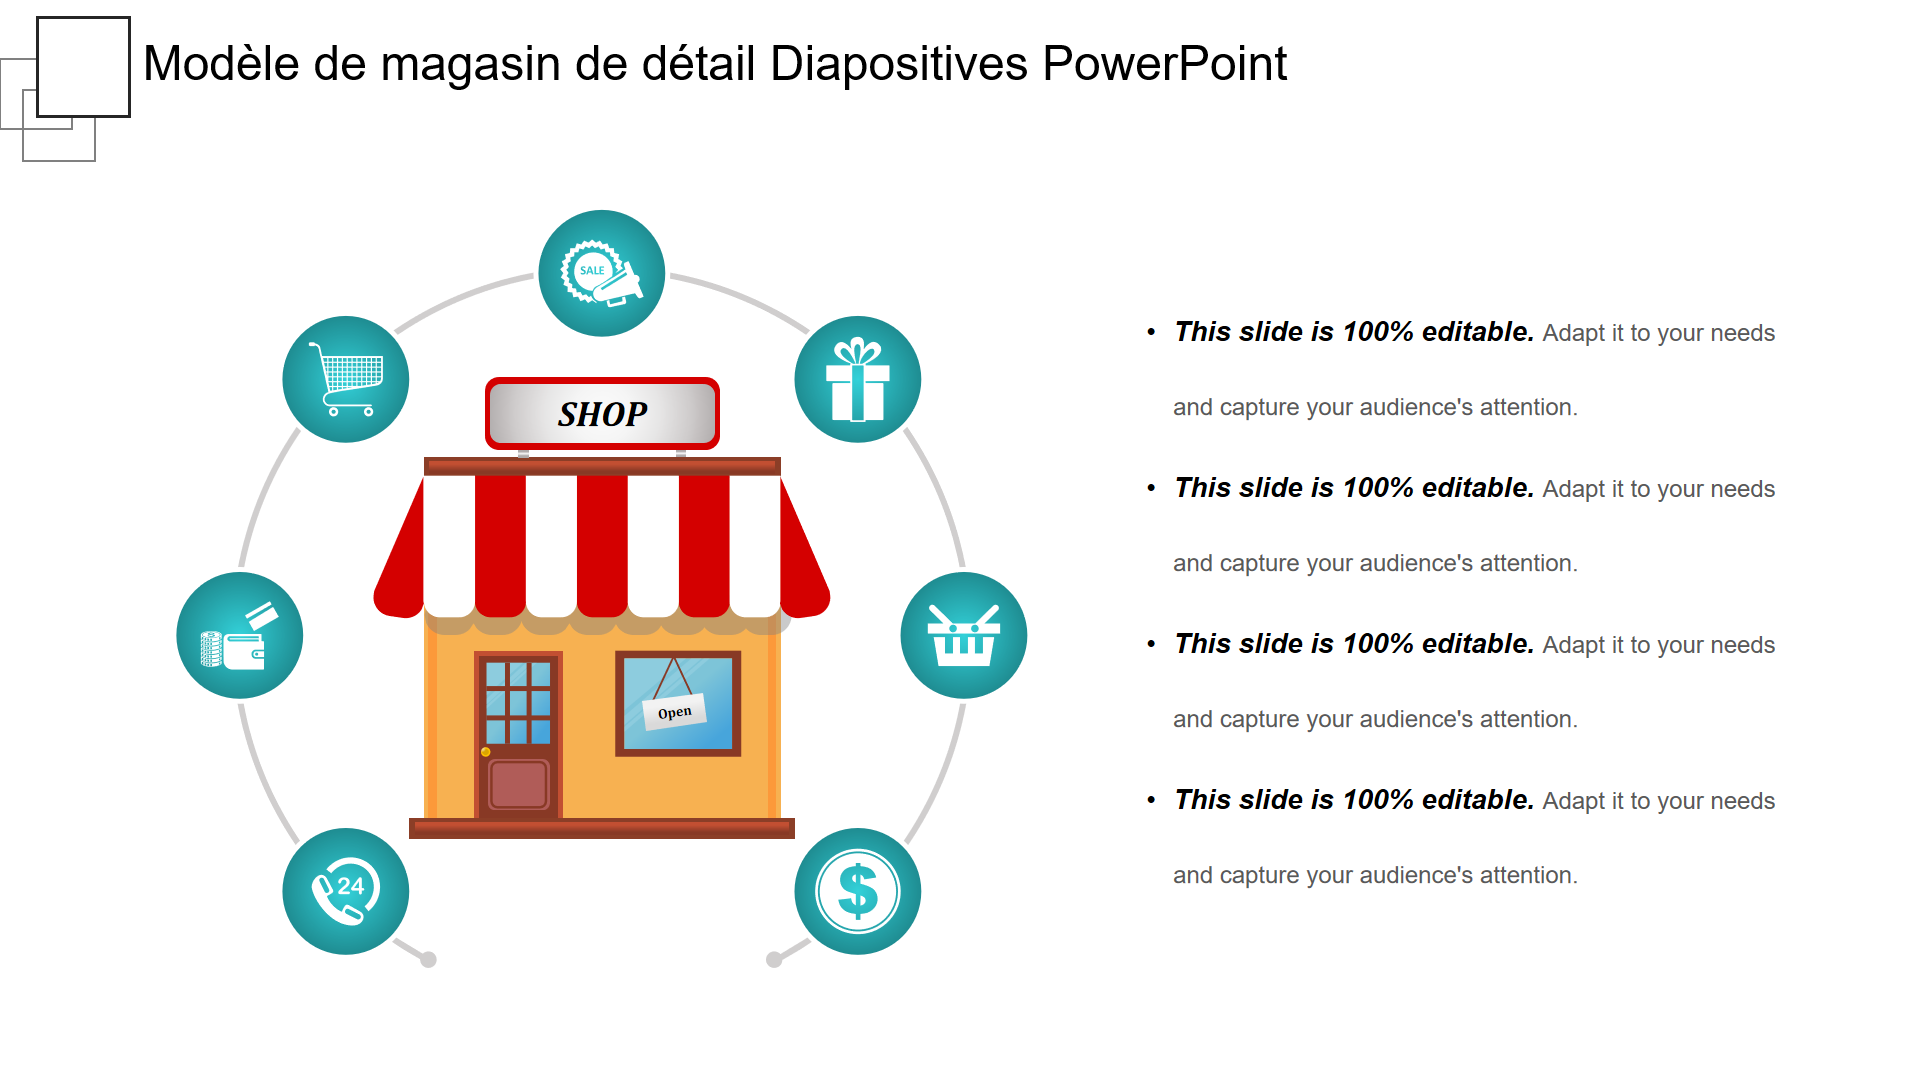 Modèle de magasin de détail Diapositives PowerPoint